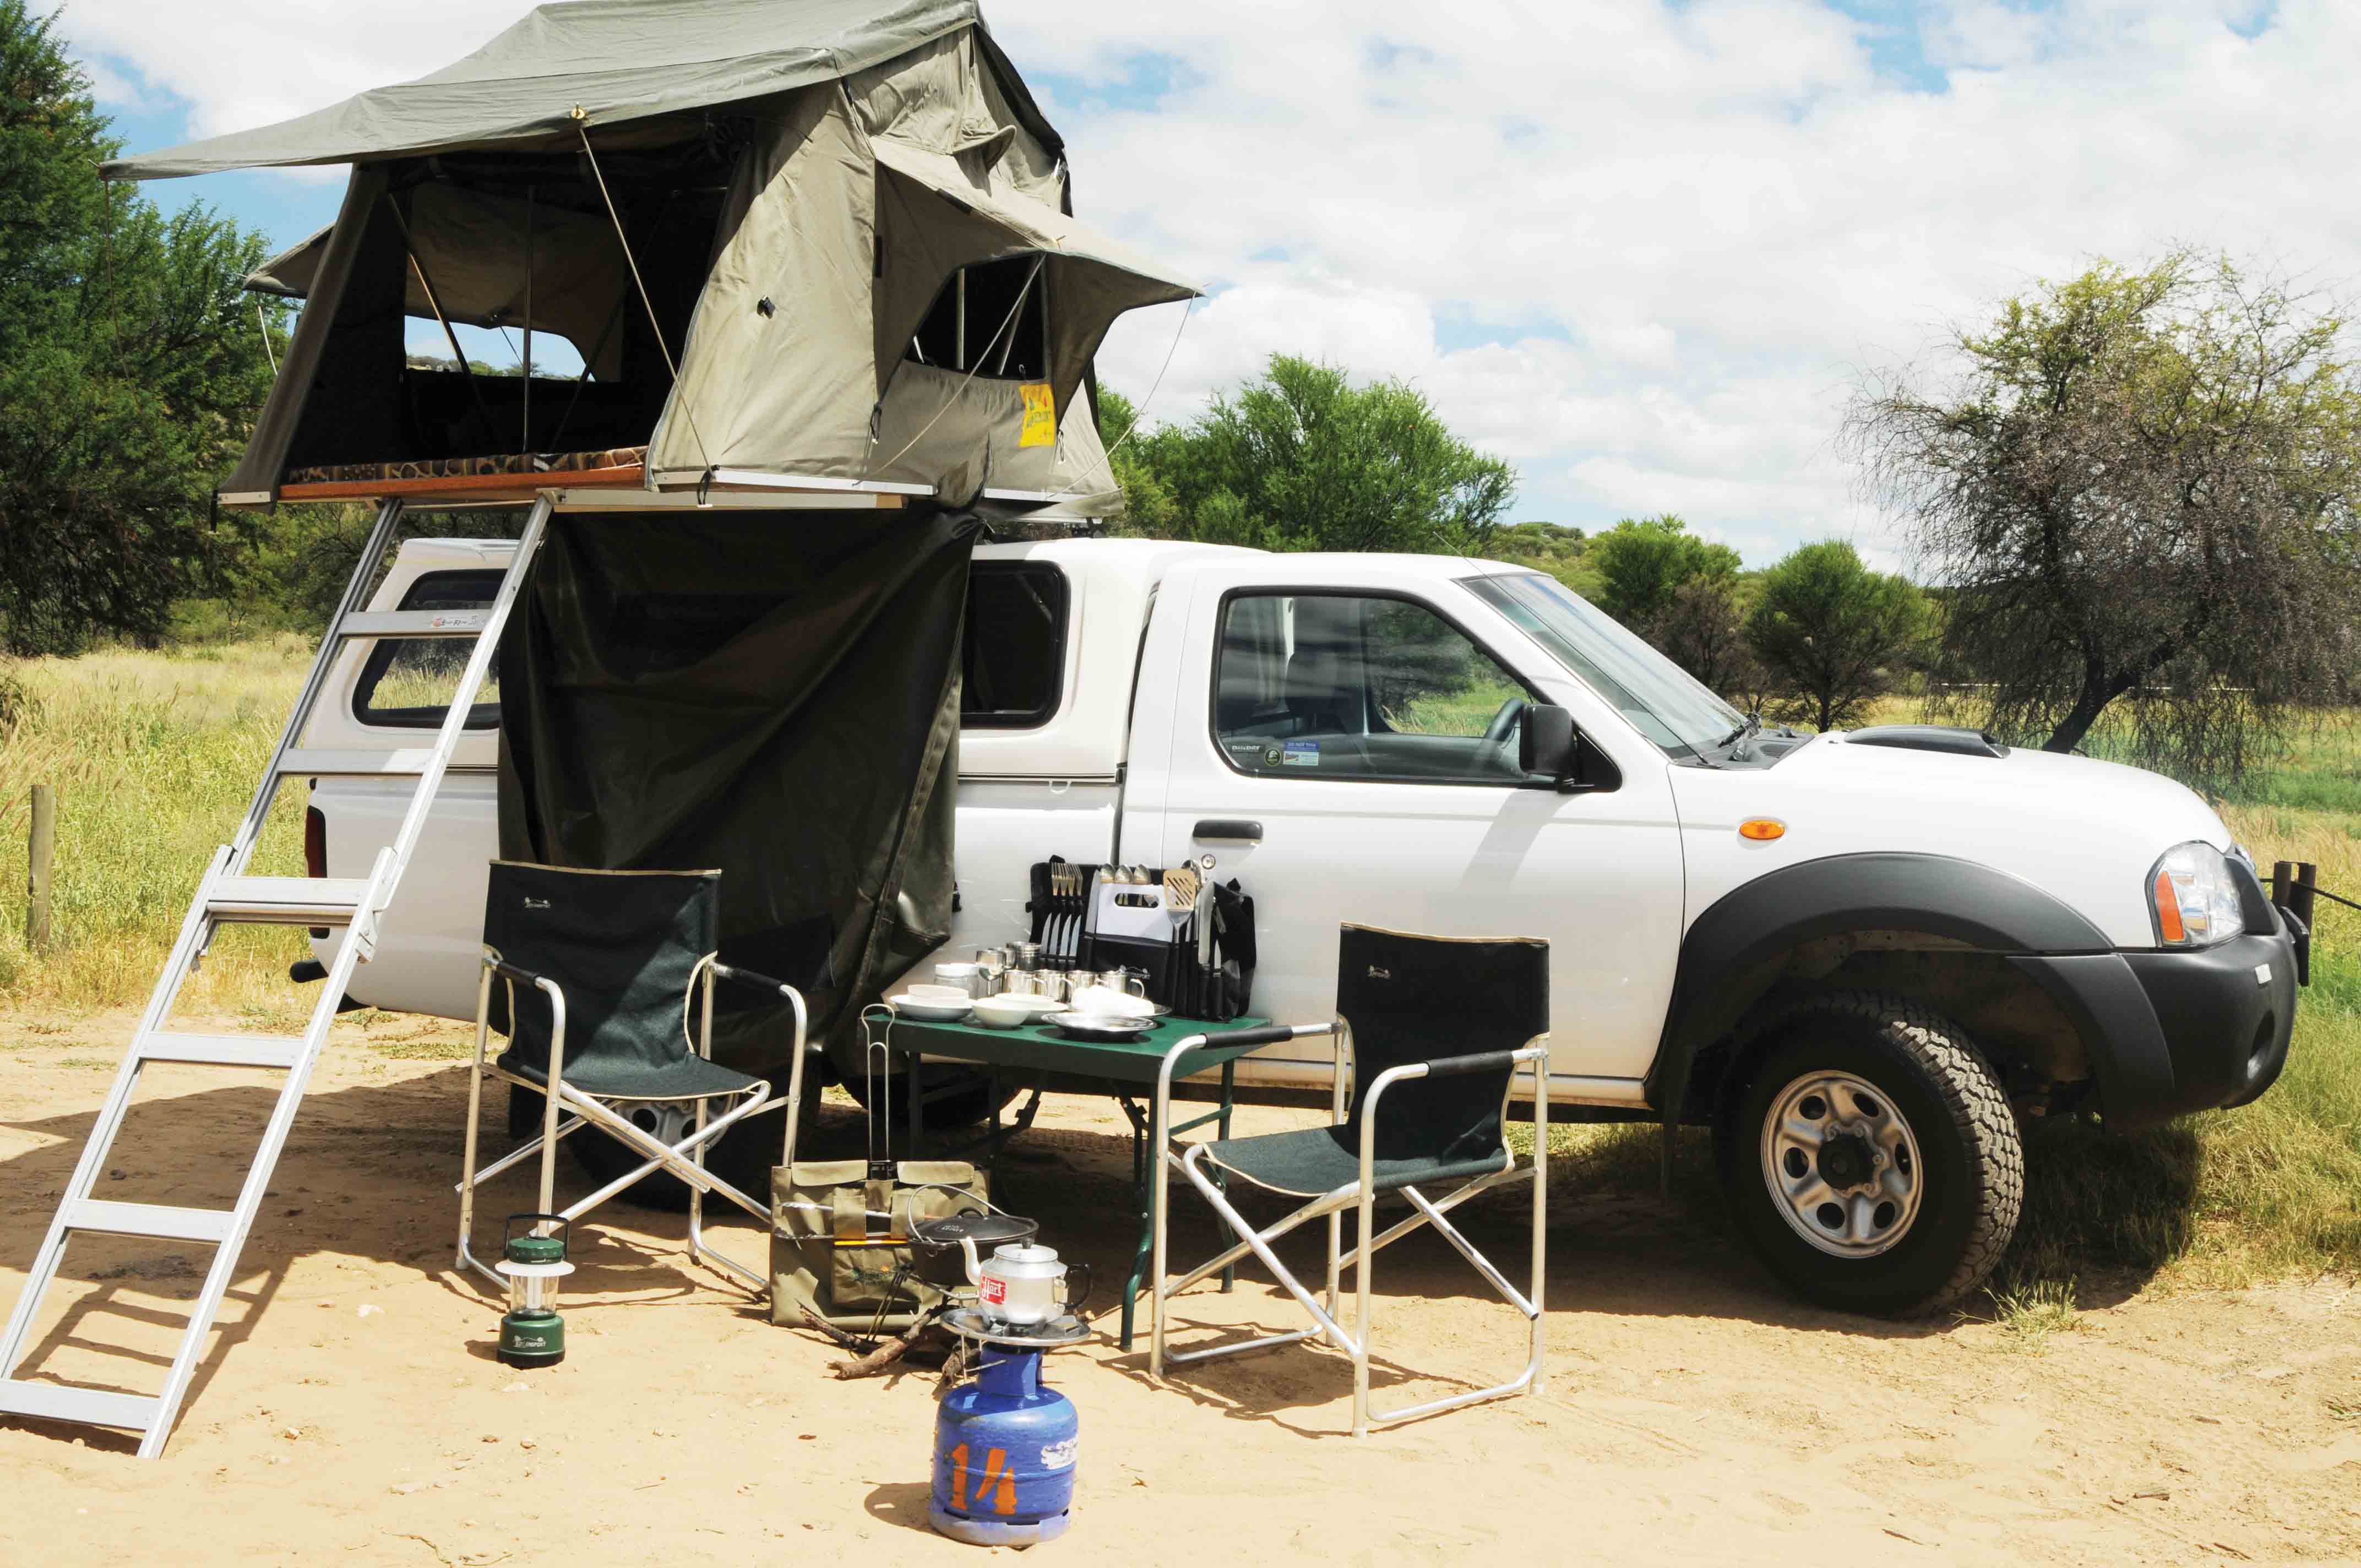 Mietwagen in Namibia mit Camping-Ausstattung für 2 Personen